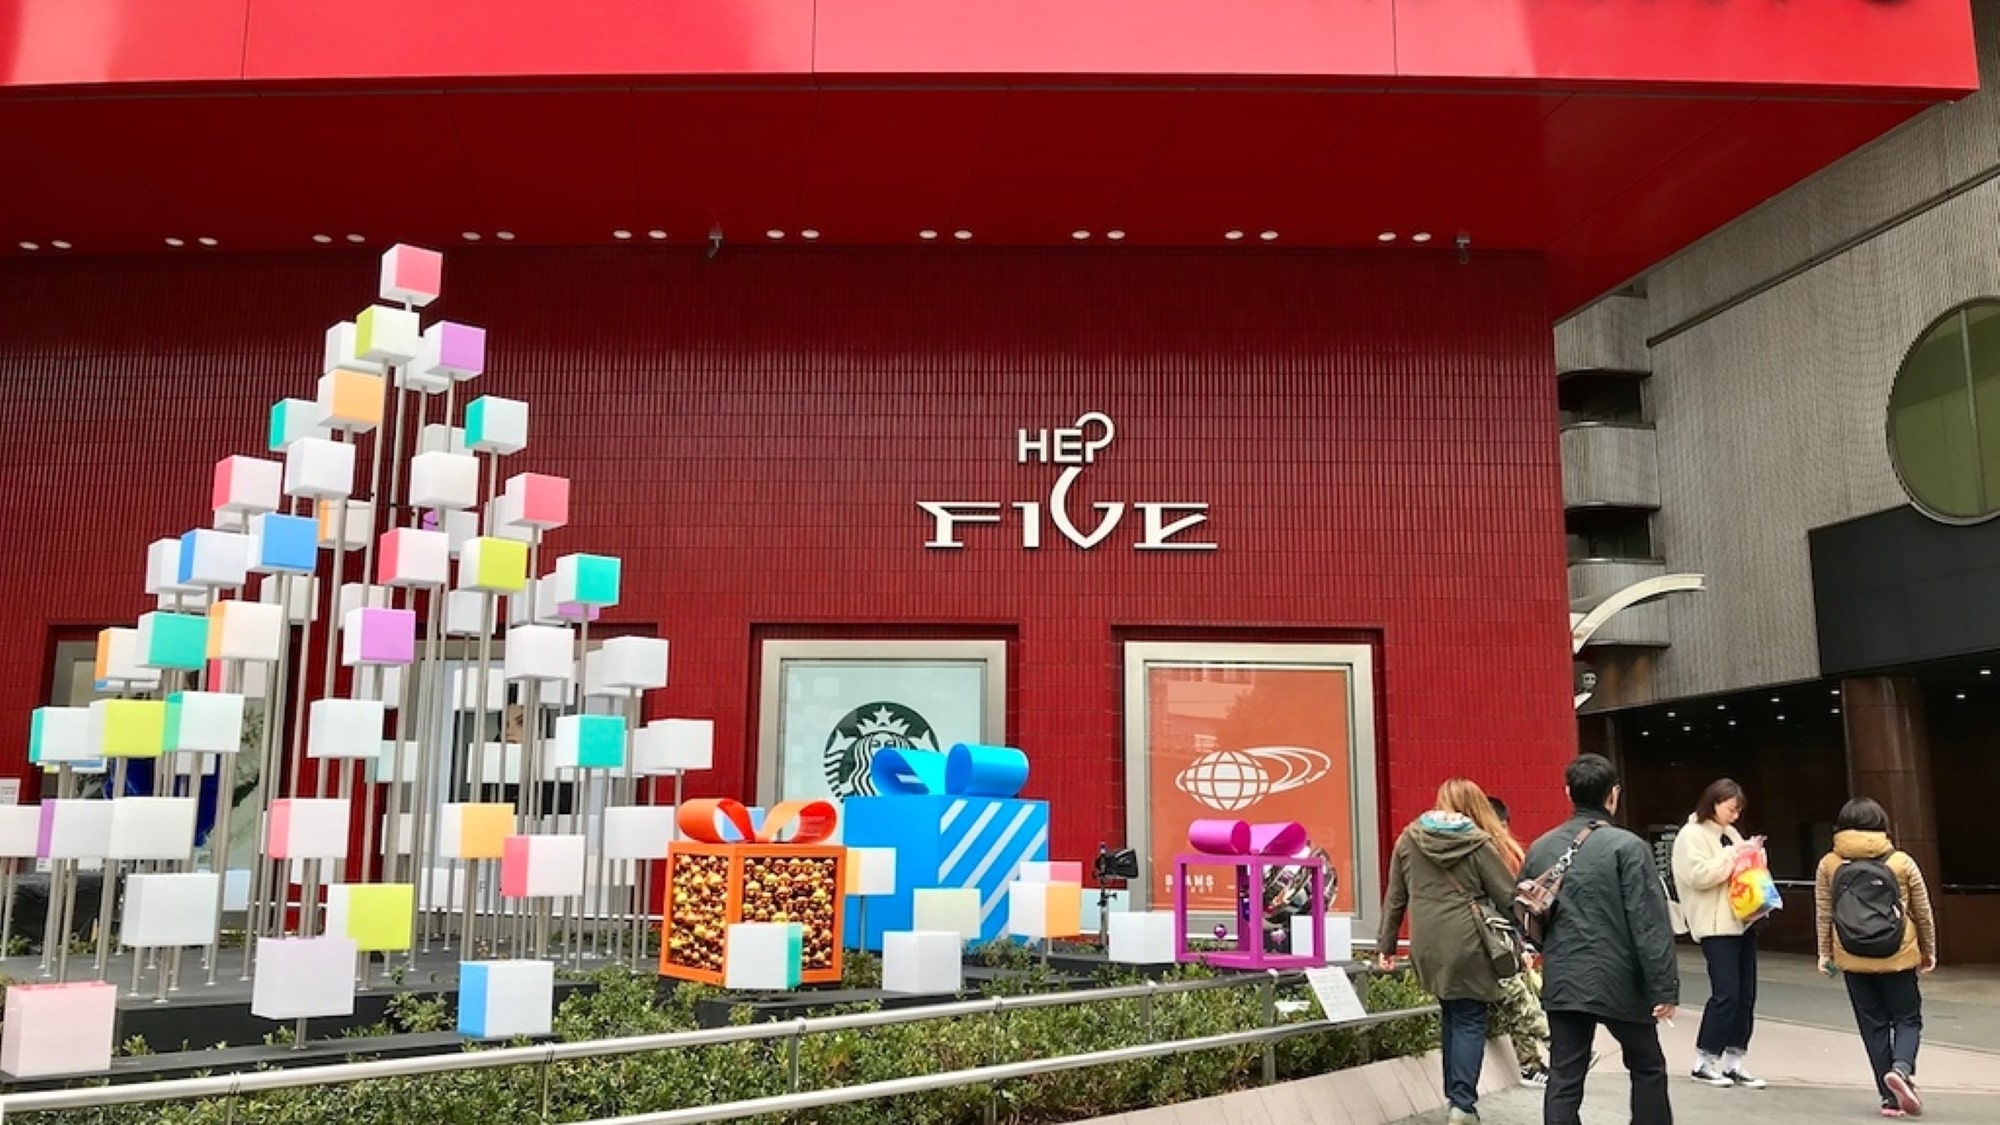 【HEP FIVE】ファッションやレストラン、アミューズメント施設などショップがそろう梅田にある複合